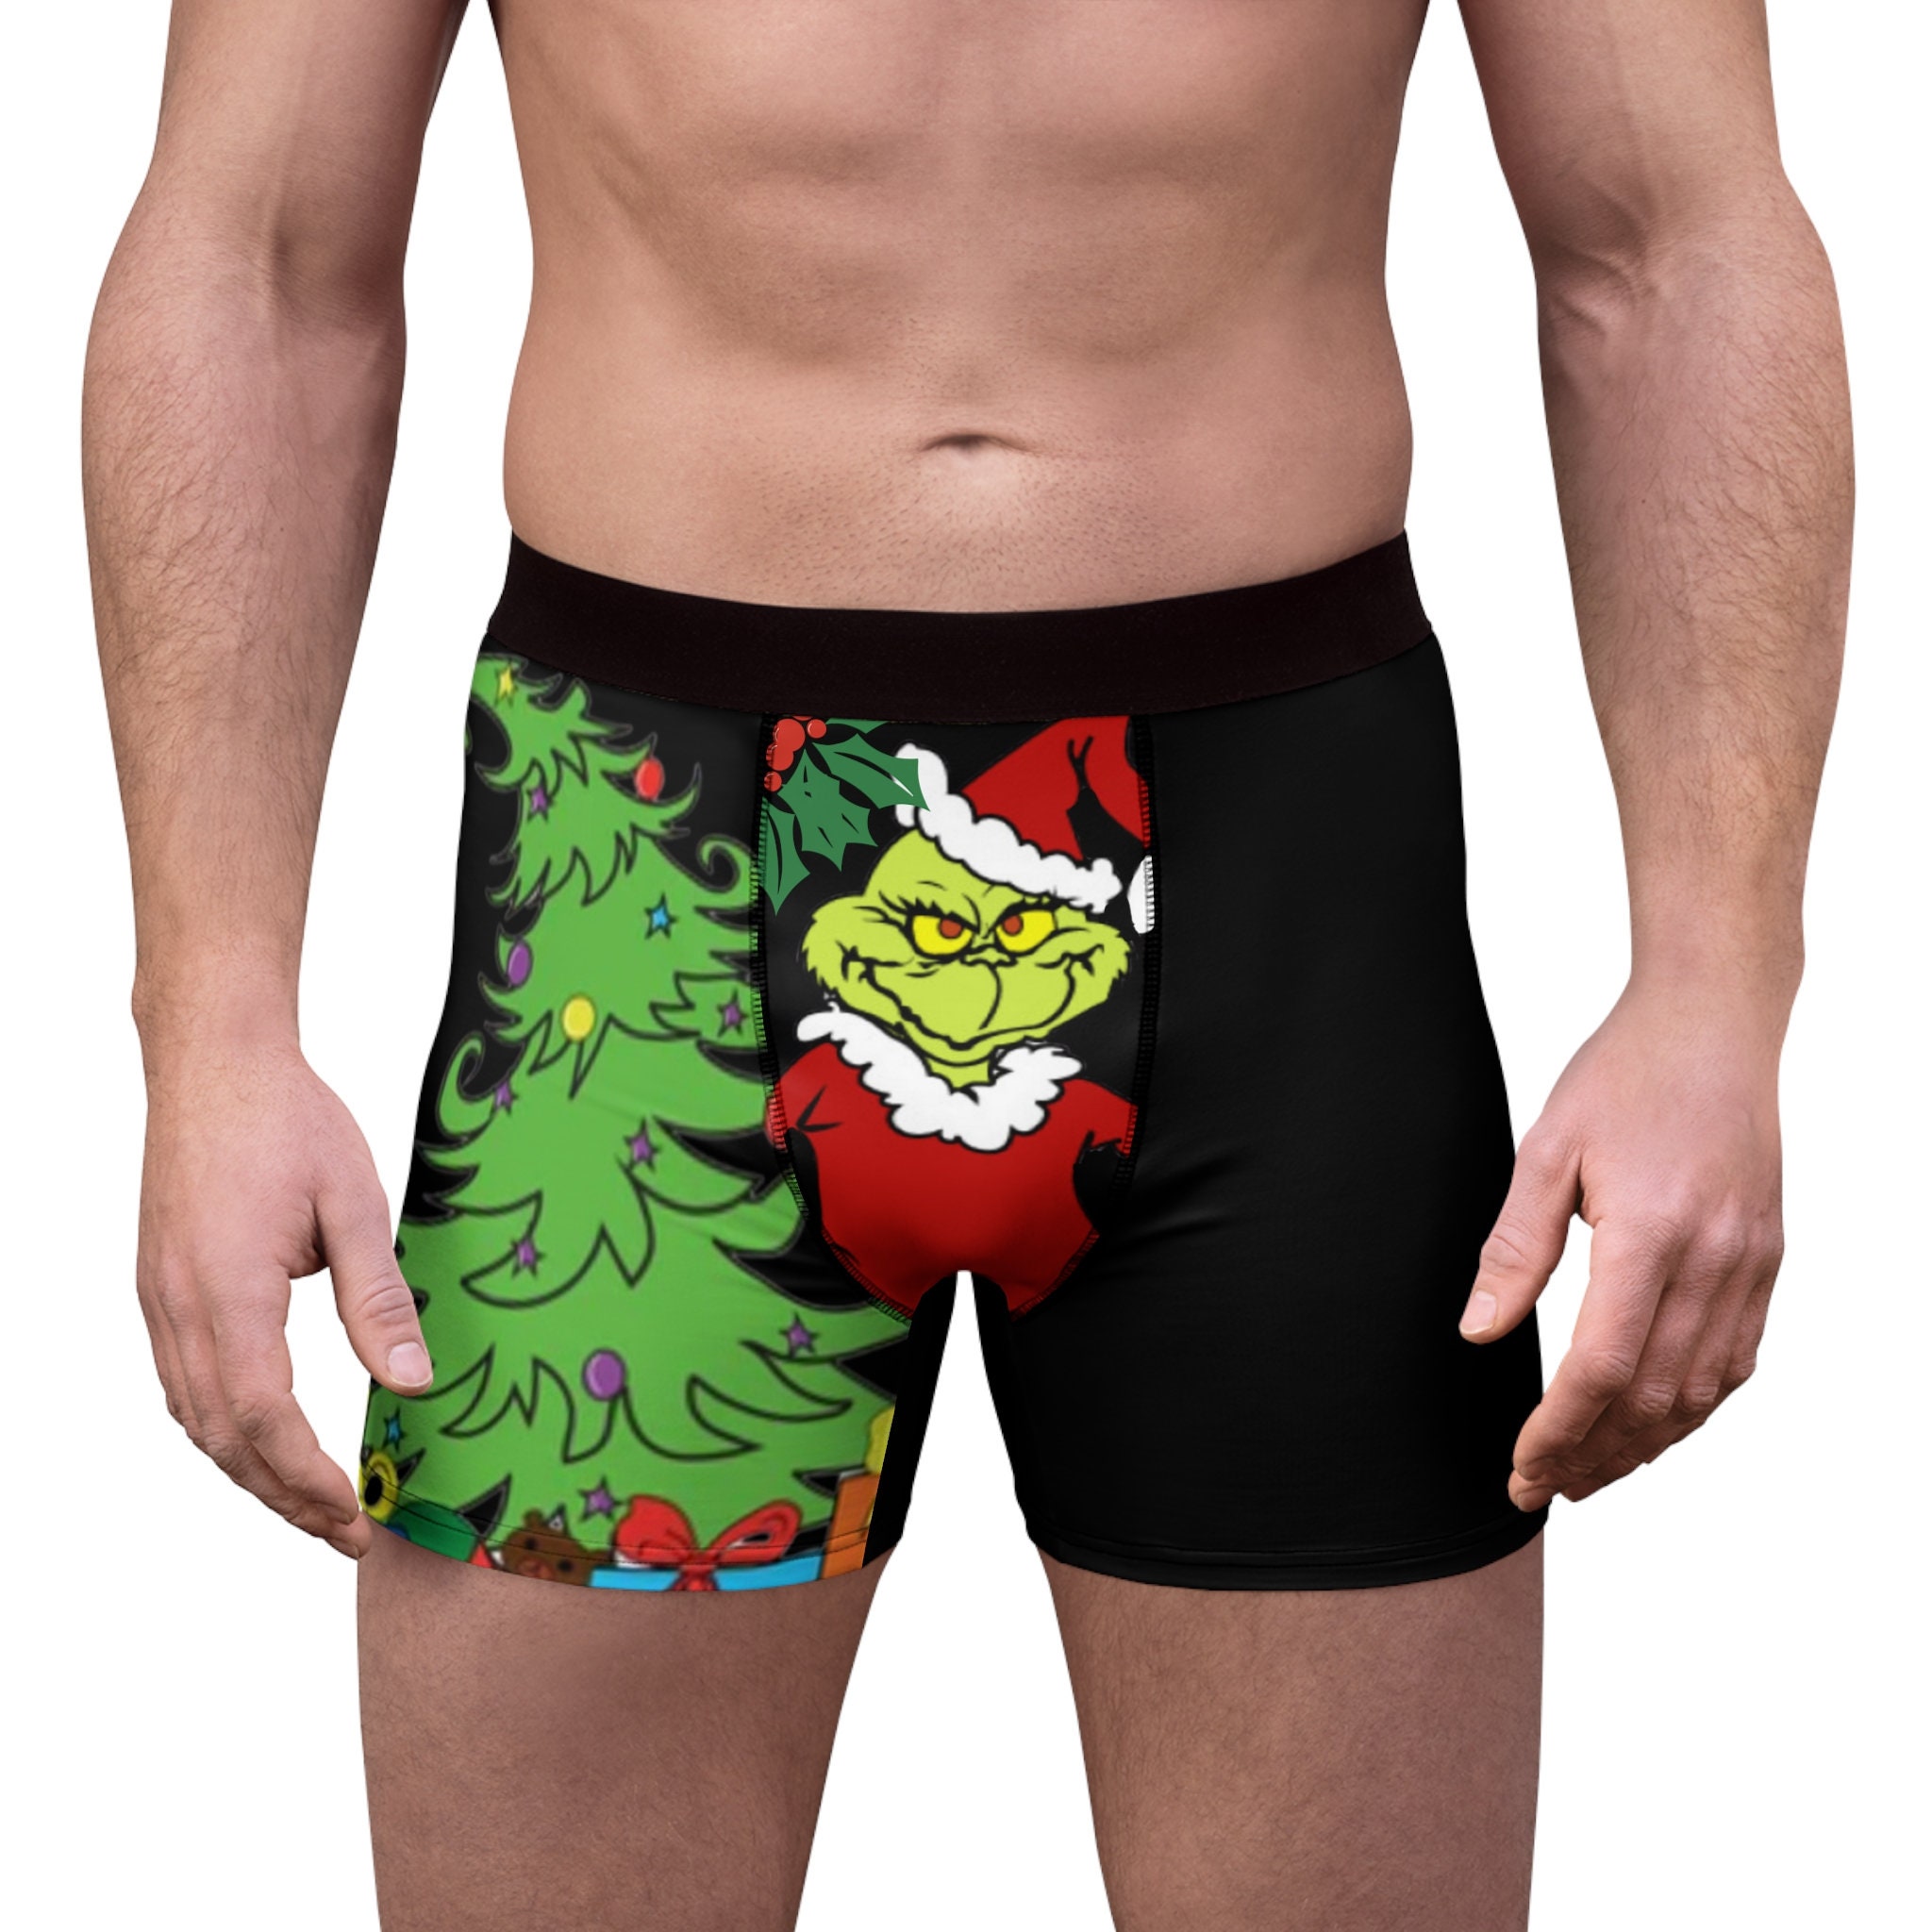 Football Boxer Briefs, Christmas Underwear, Grinch Underwear